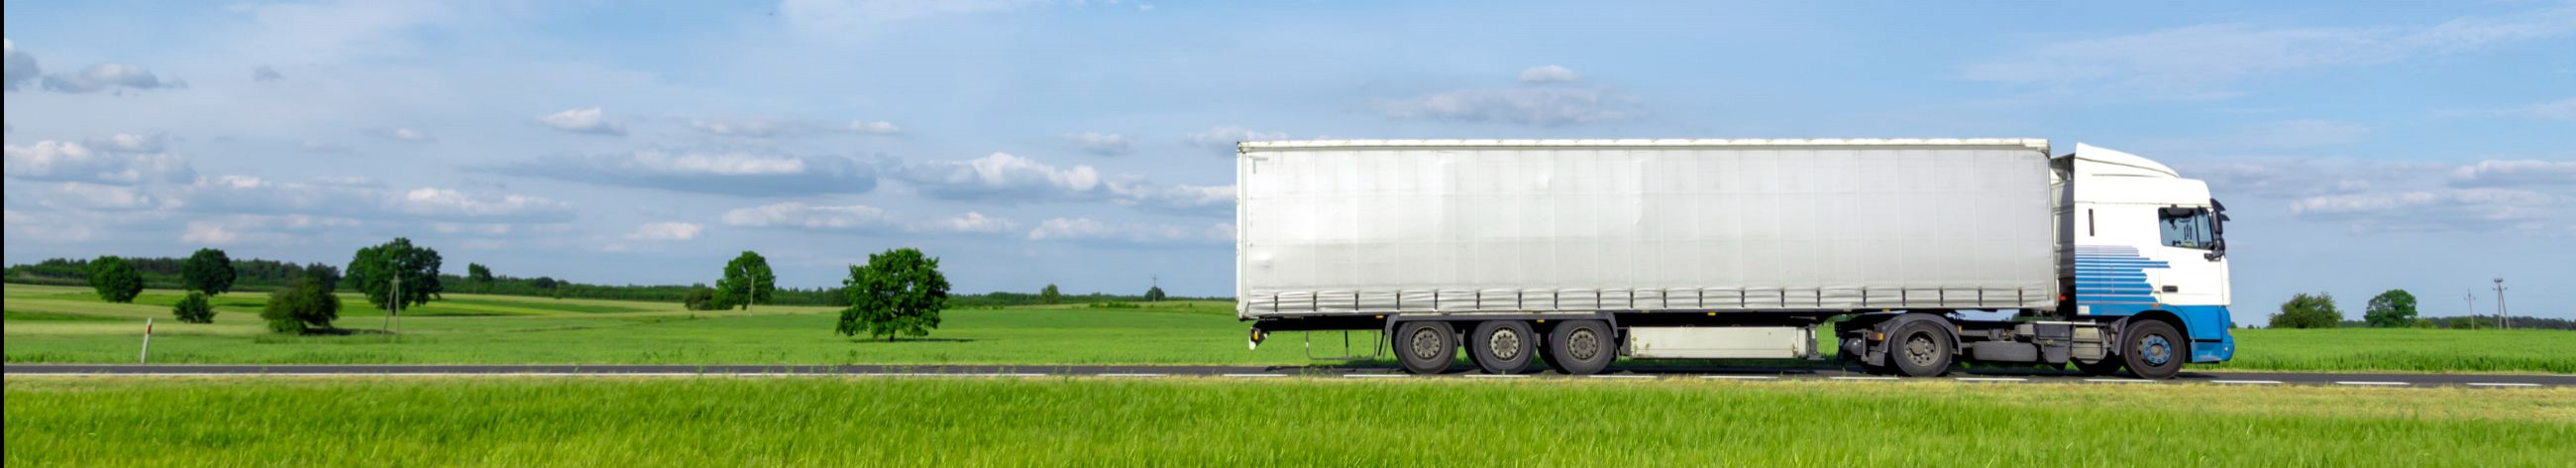 Pakume kvaliteetseid logistikateenuseid, sealhulgas ka tolliteenuste, ekspedeerimise ning kaubaveo lahendusi